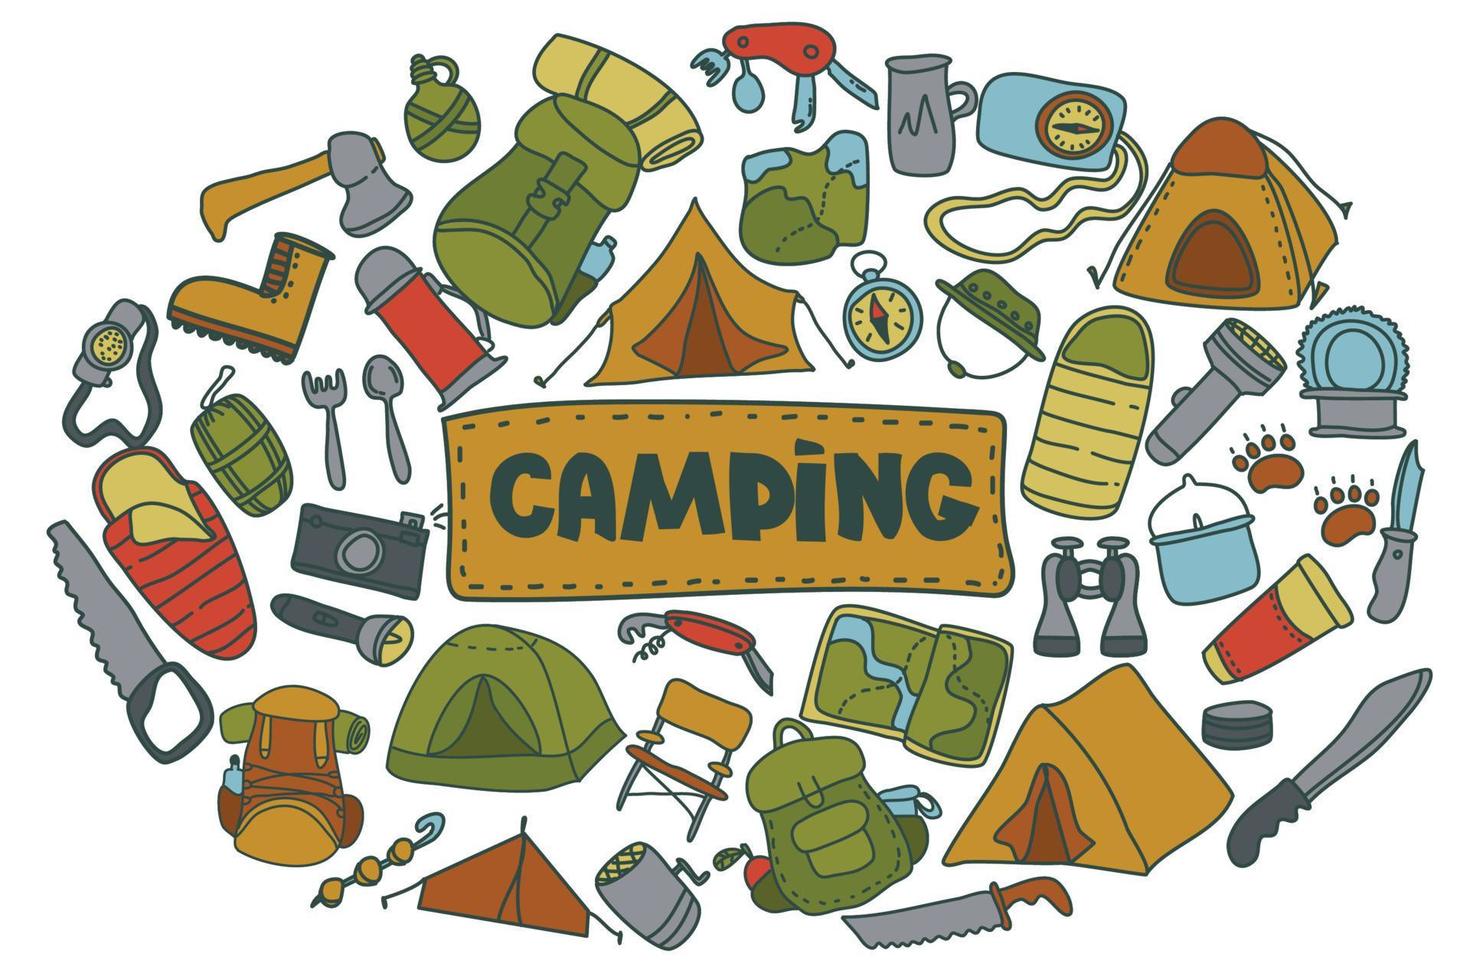 doodle estilo camping set.hand desenhada vetor camping clip art set. isolado no fundo branco, desenho para impressões, cartazes, artigos de papelaria fofos, design de viagens. natureza, recreação na floresta, esporte.